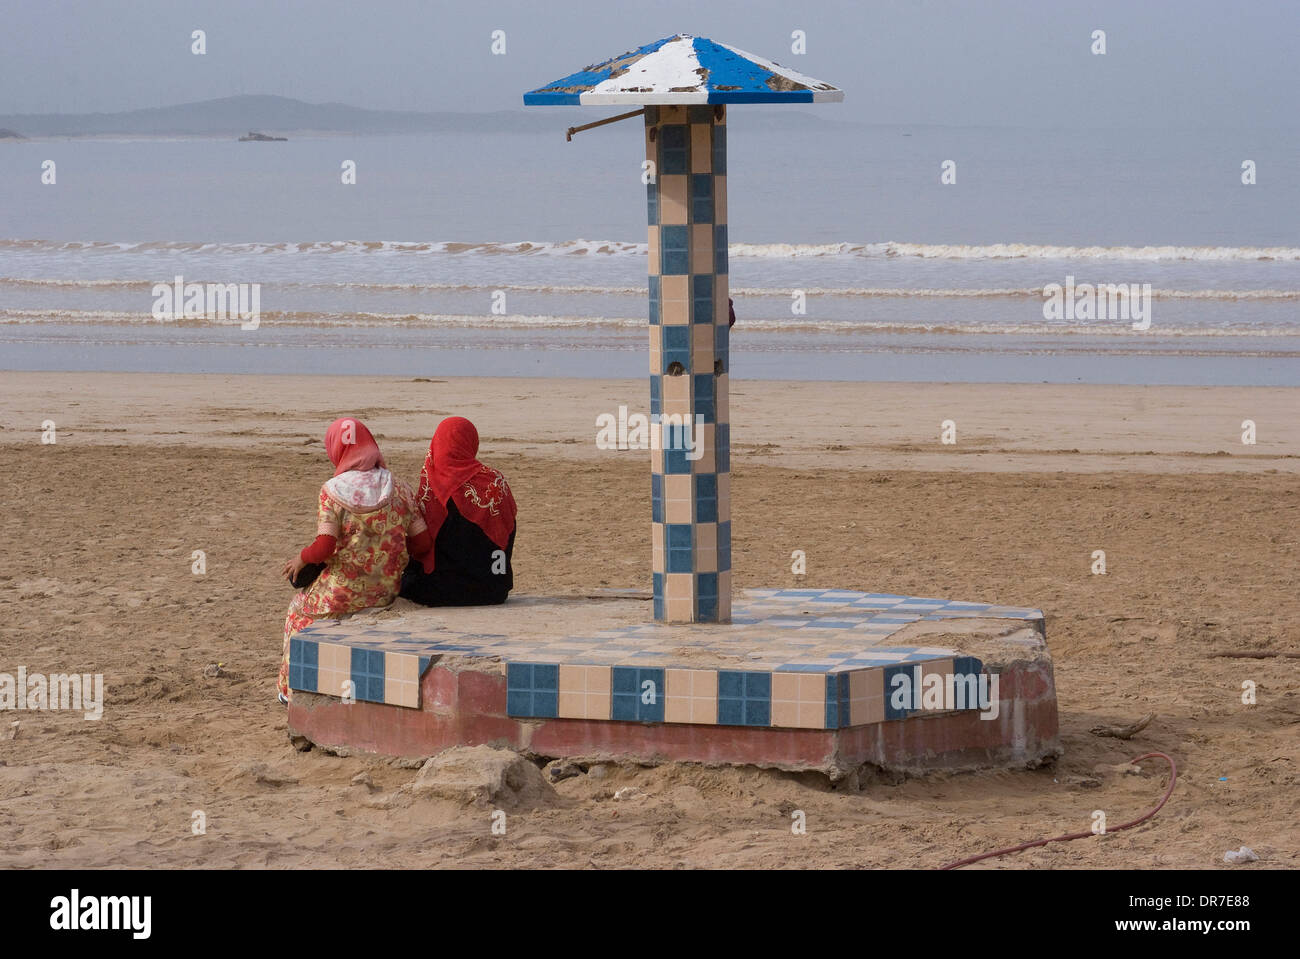 Traditionell gekleideten Frauen genießen, beobachten die Wellen am Strand, Essaouira, Marokko Stockfoto